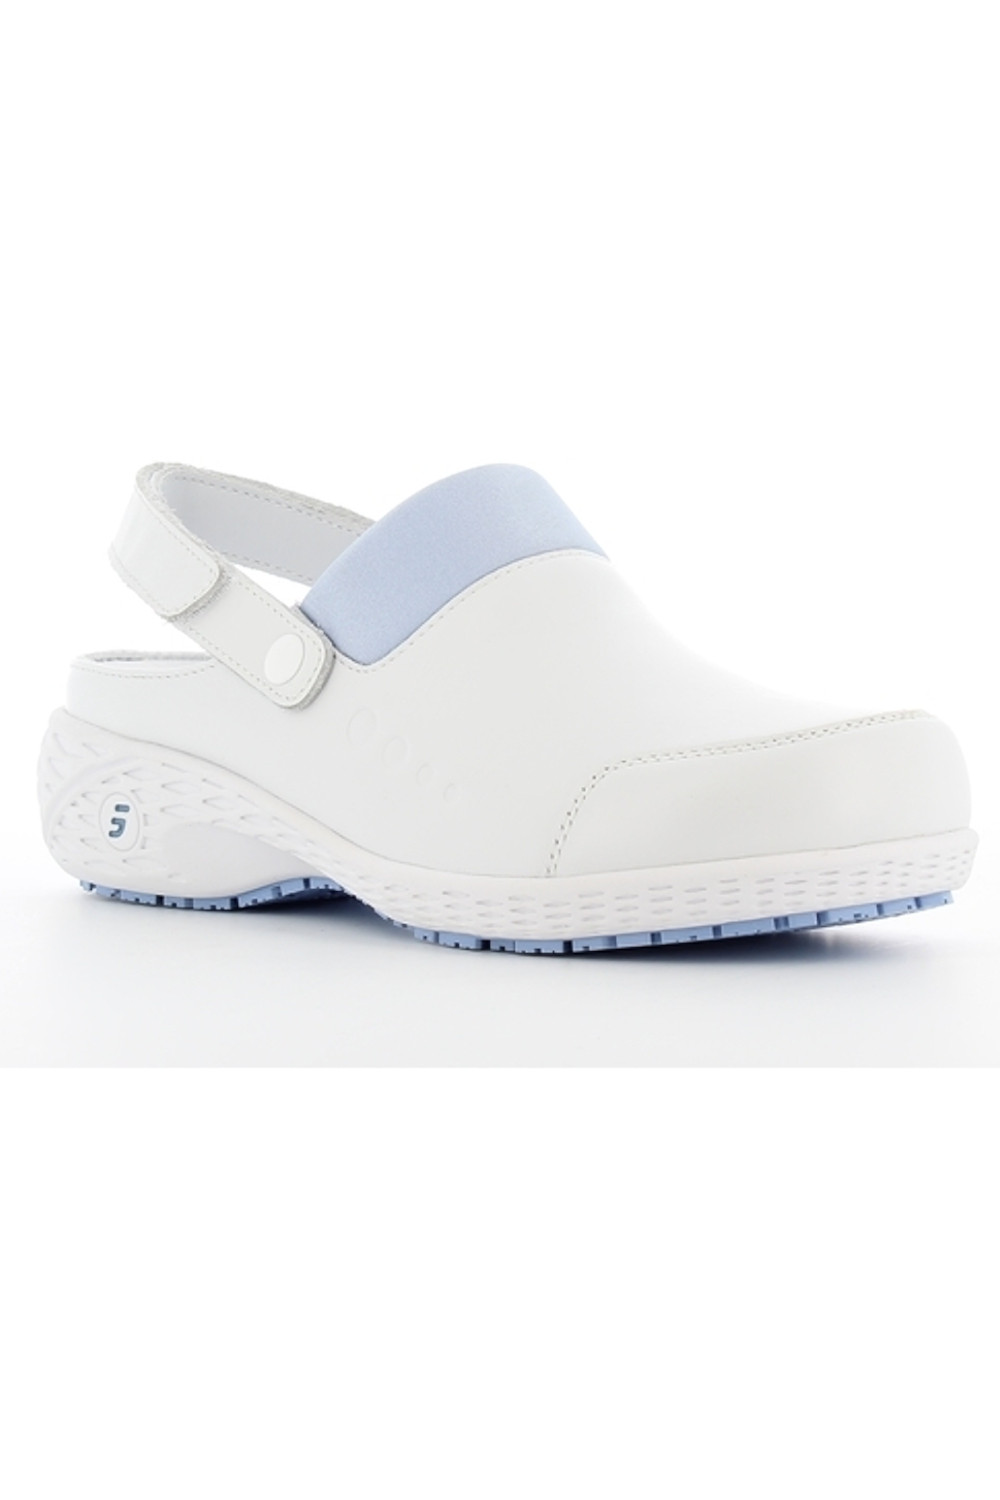 Buty damskie SHEILA obuwie medyczne kolor biały z błękitem